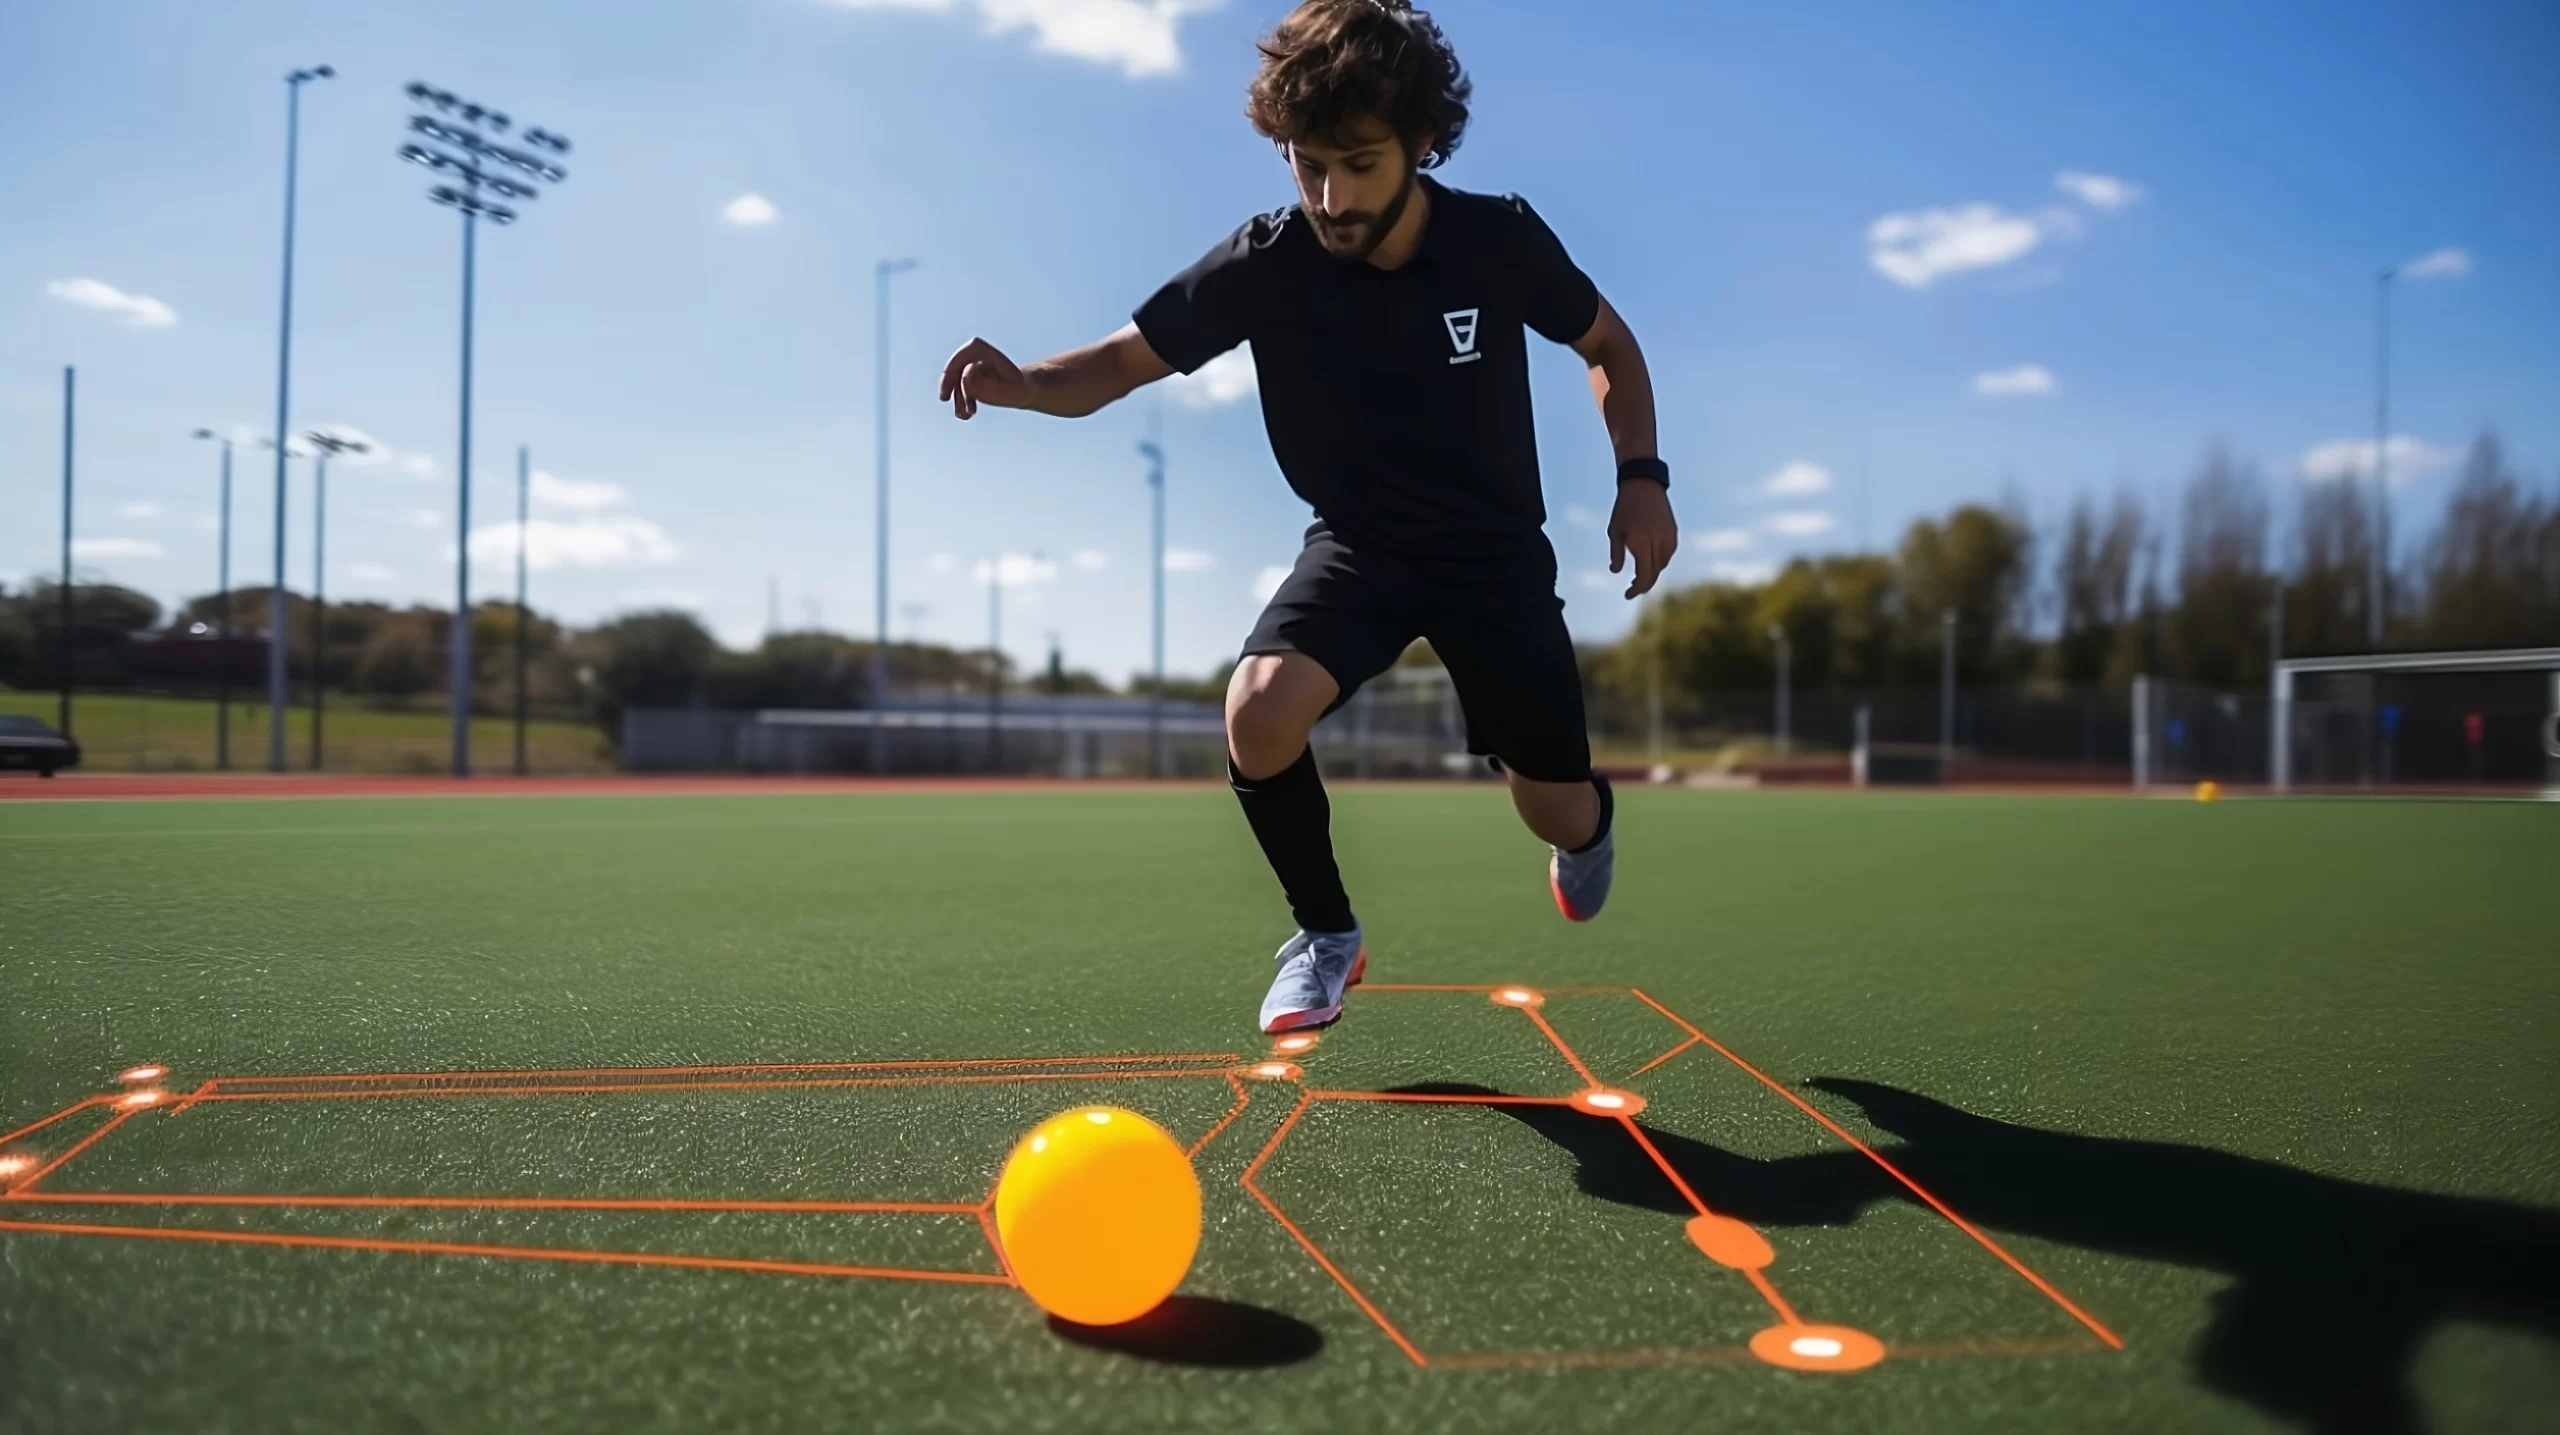 Inteligência artificial e futebol: como ela já está transformando o esporte  – FUTEBOCRACIA